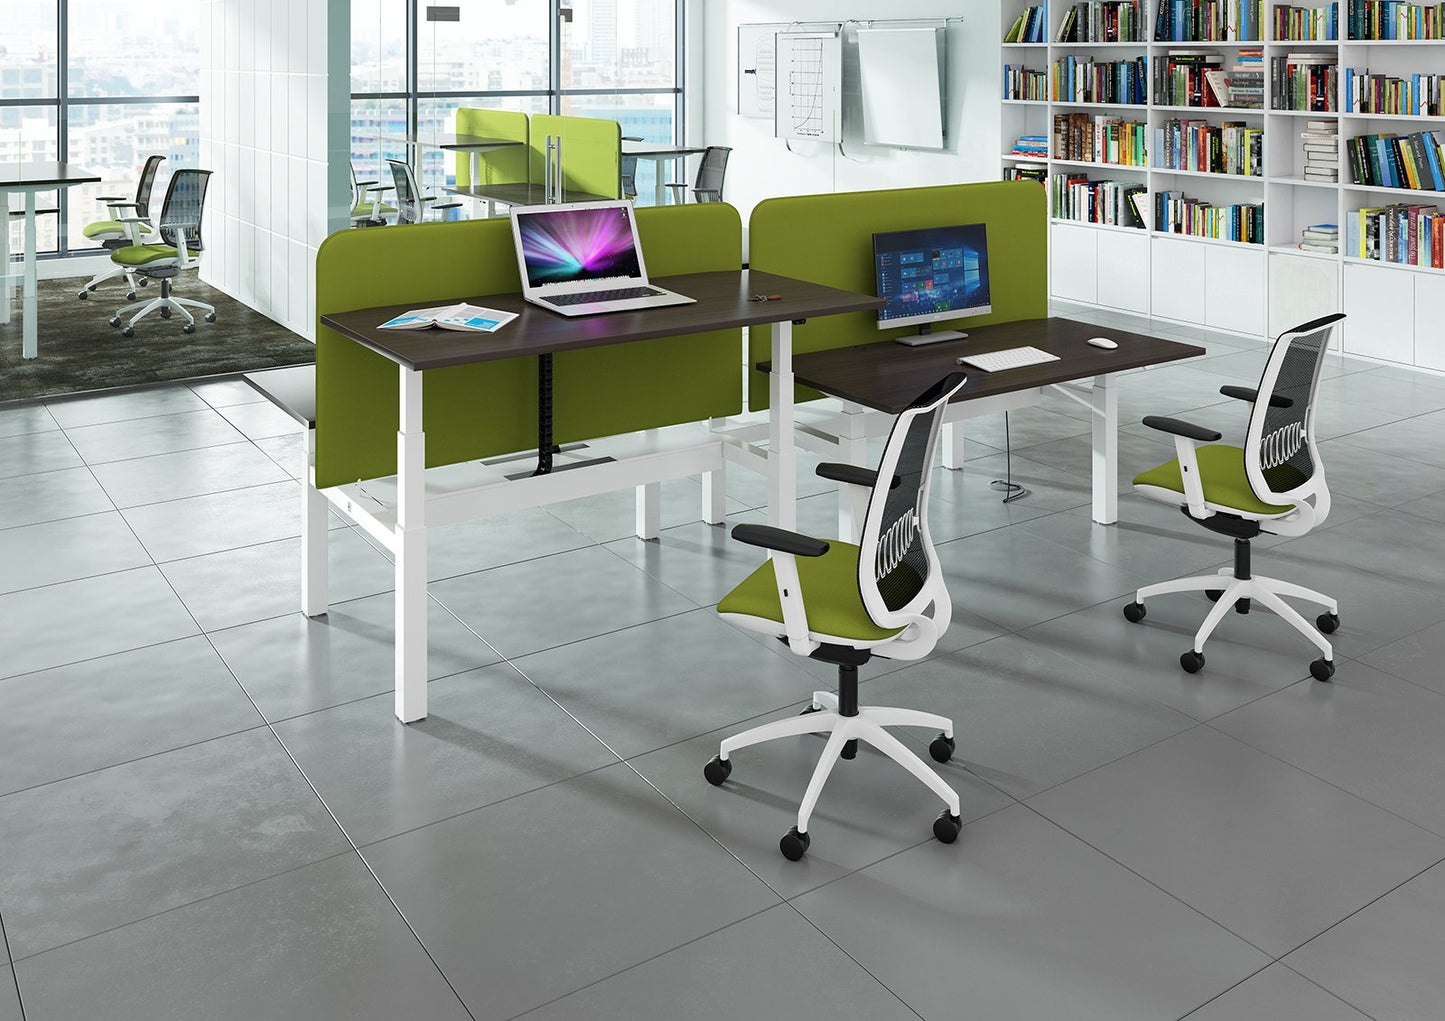 2 Persons - Elev8 Electric Height Adjustable Back-To-Back Desks 120cm wide